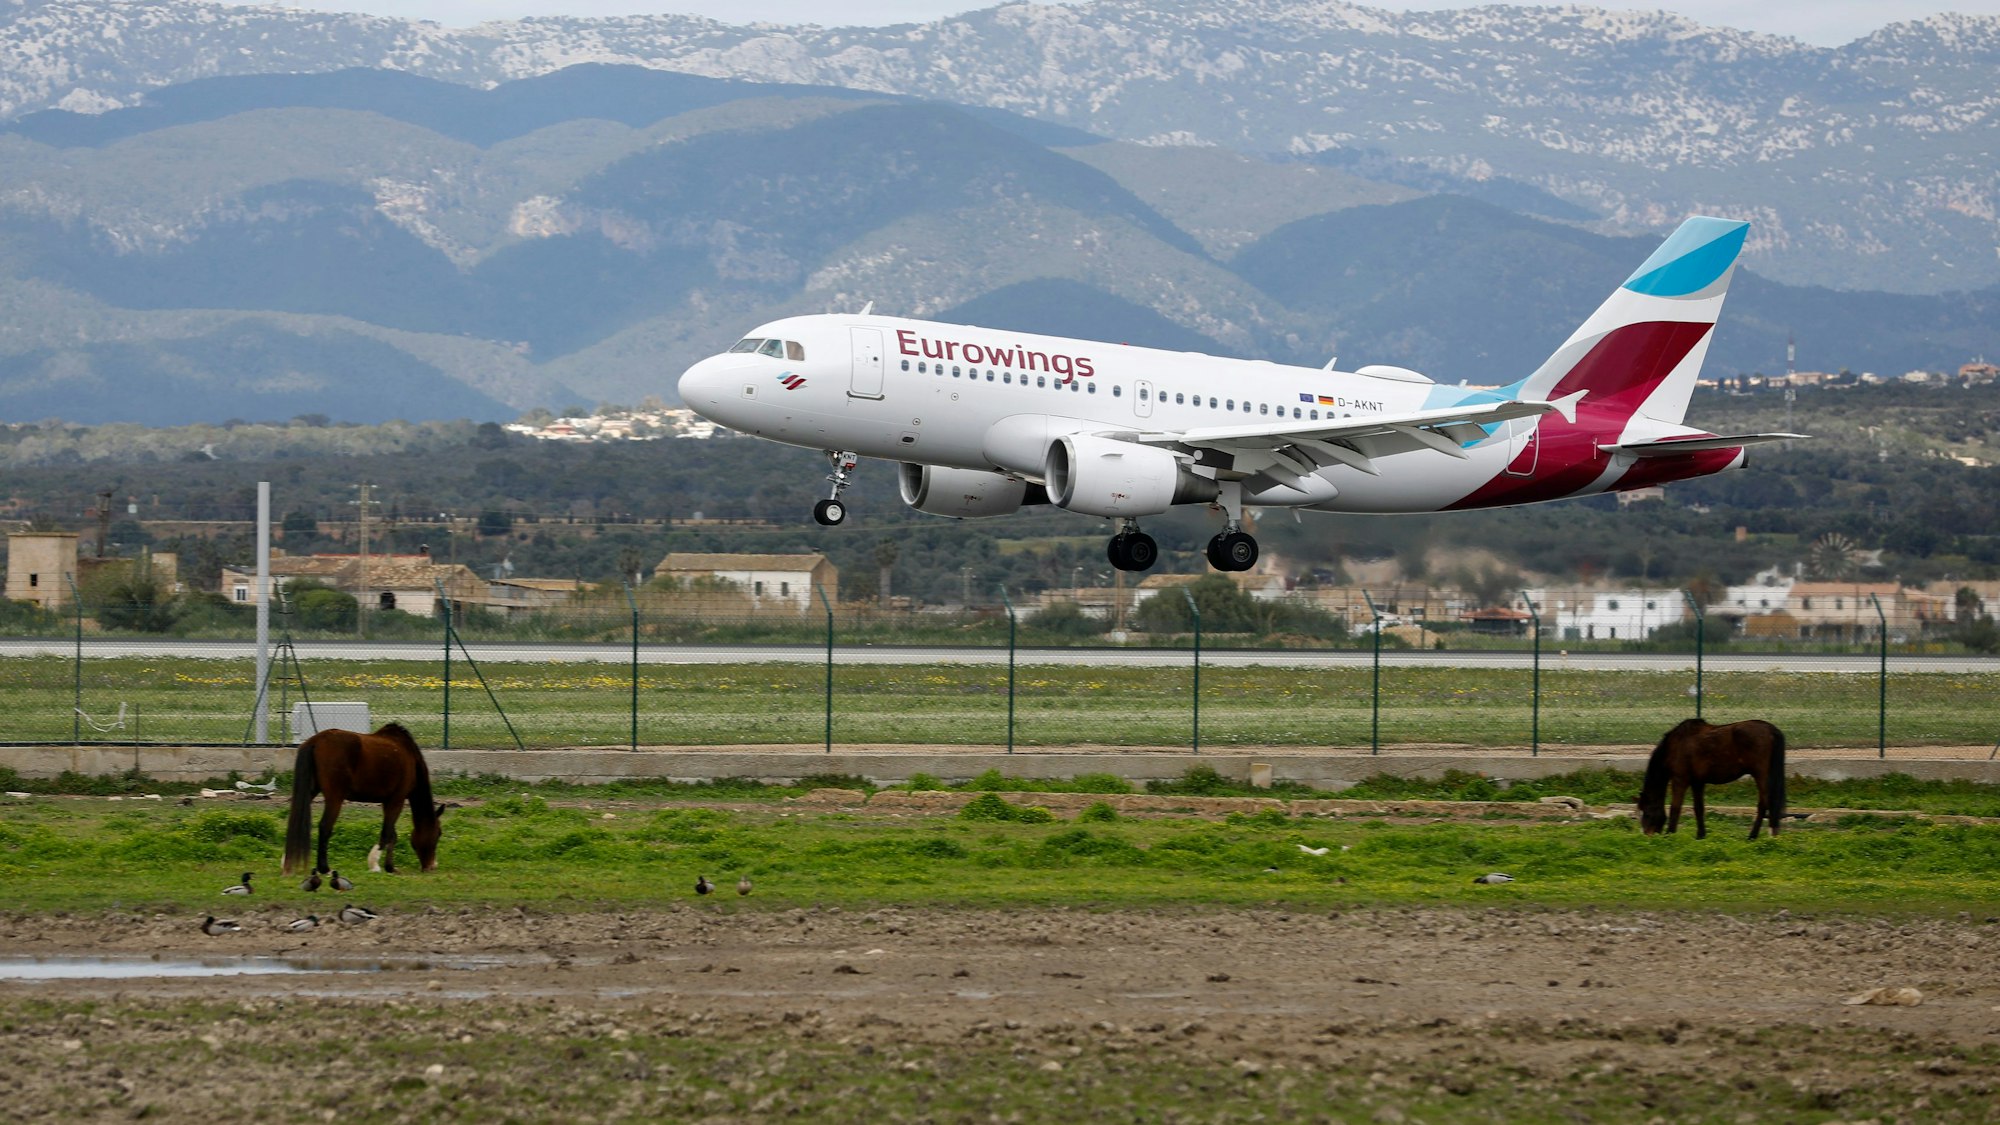 Ein Flugzeug von Eurowings landet am Flughafen von Palma de Mallorca.